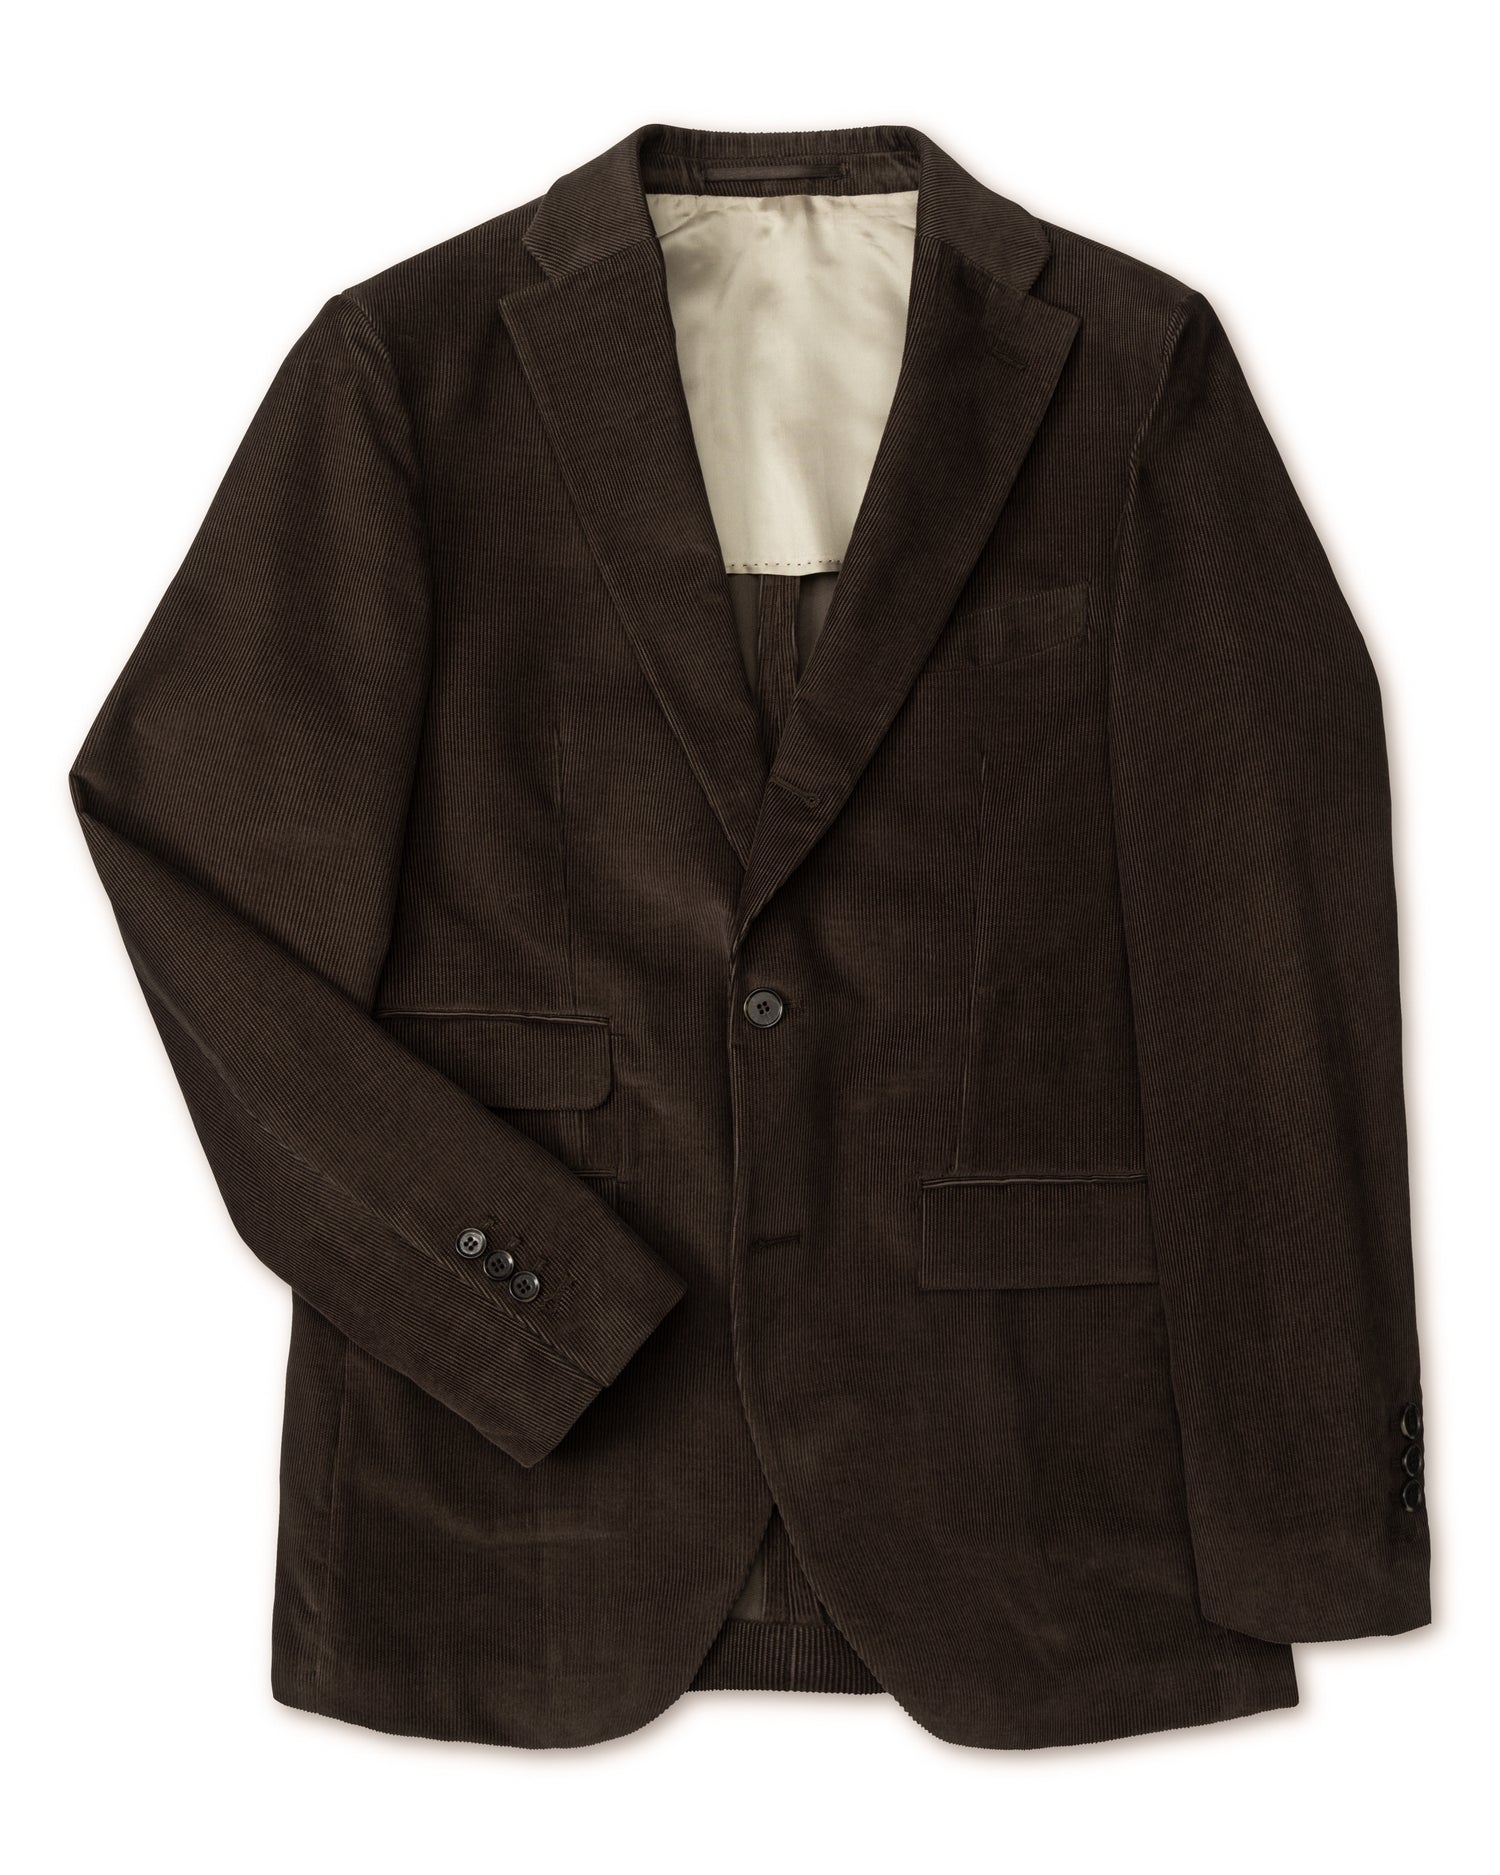 Brown Corduroy Suit in Slim fit (8456822063434)